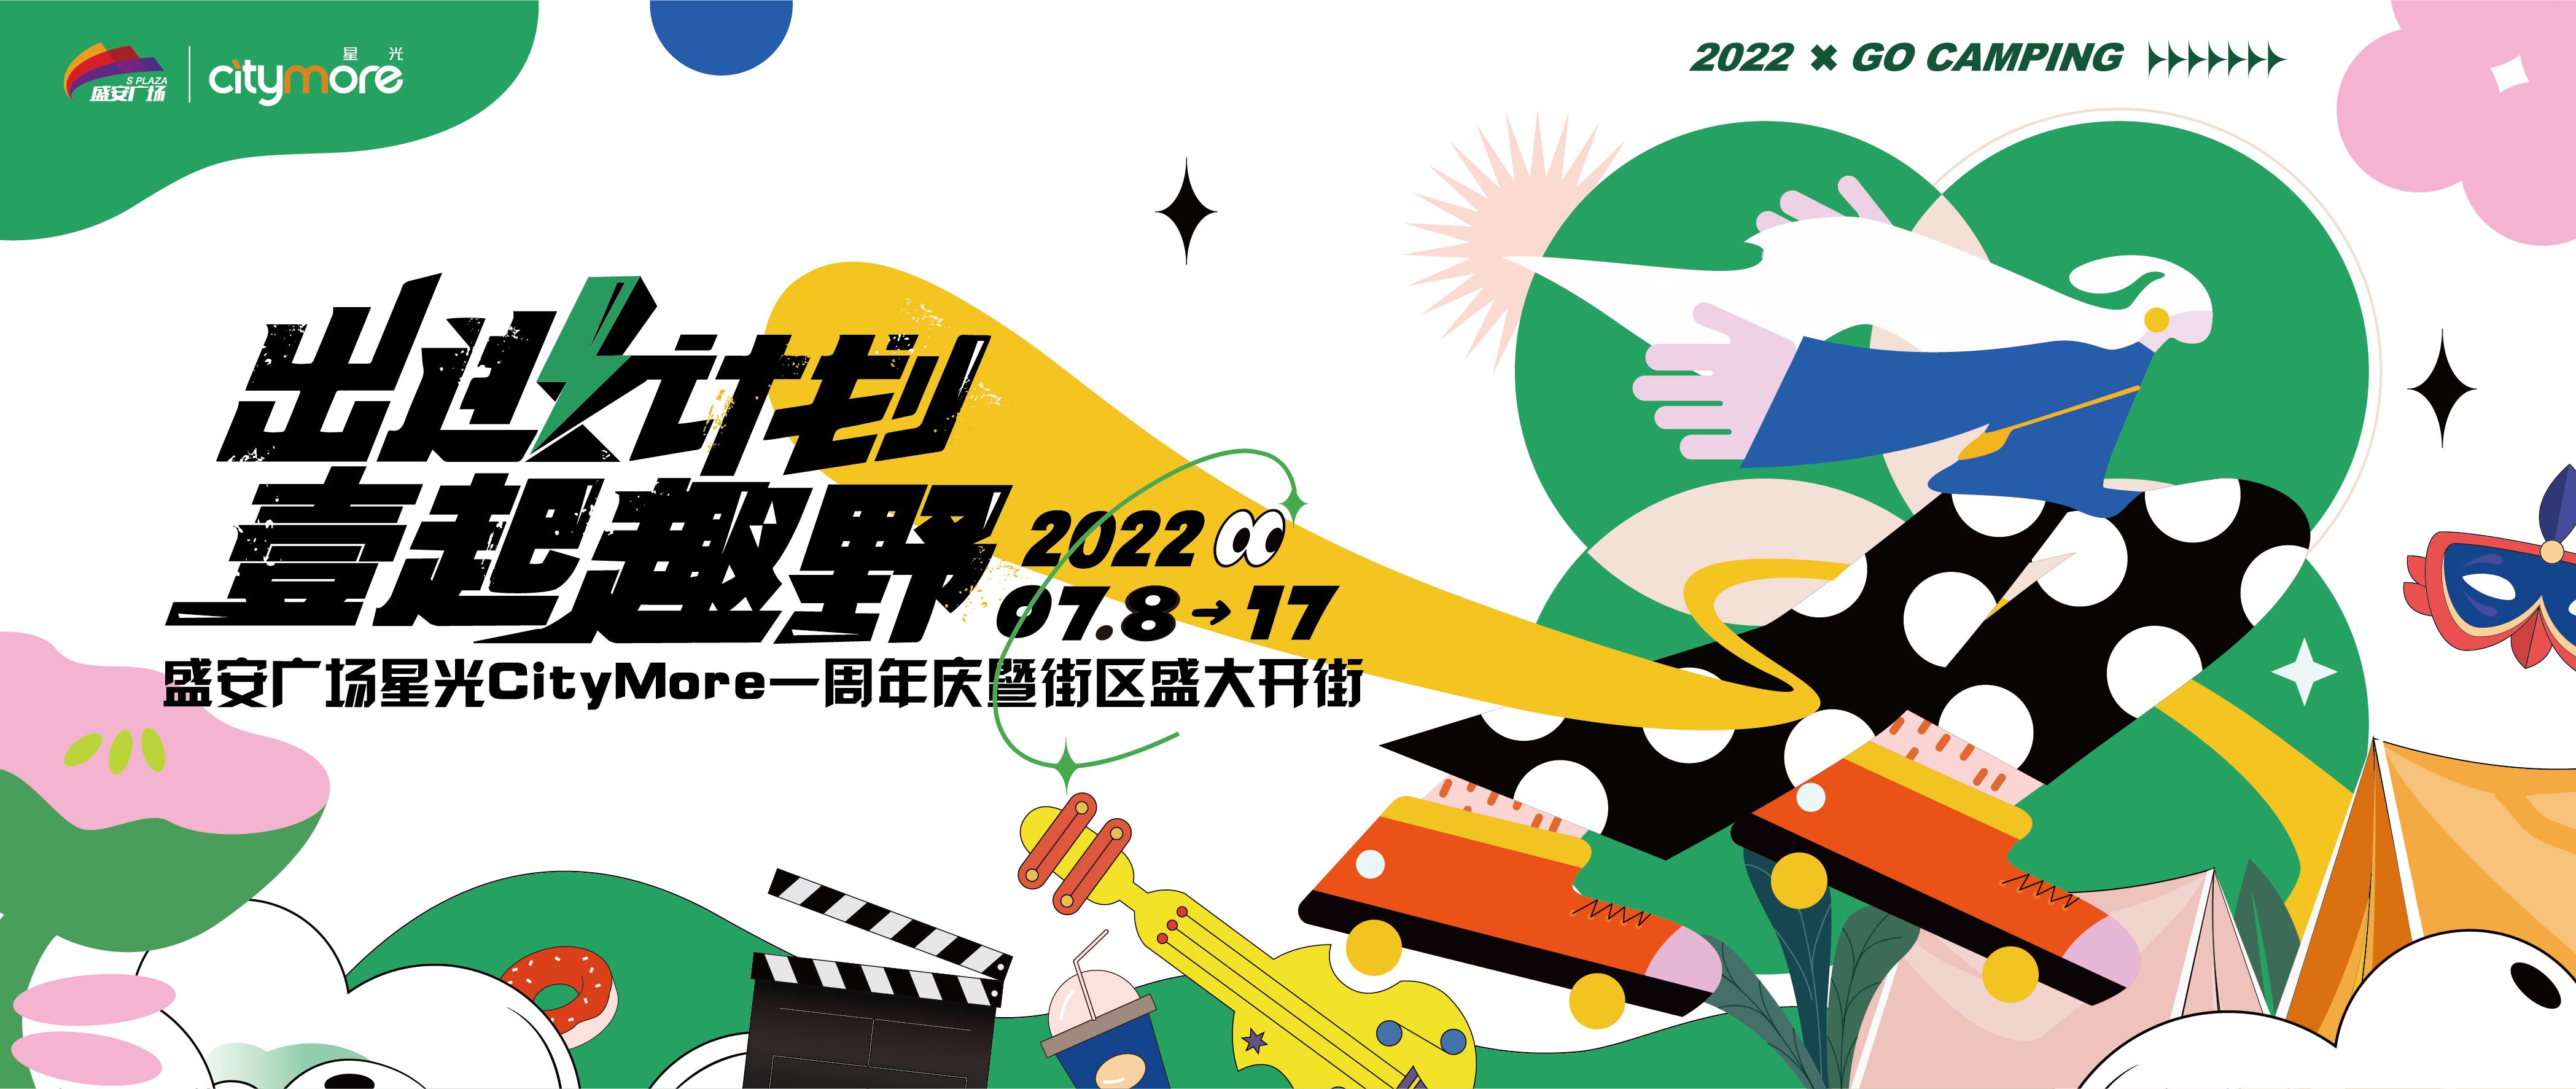 2022首届盛安广场杯足球邀请赛盛大开赛